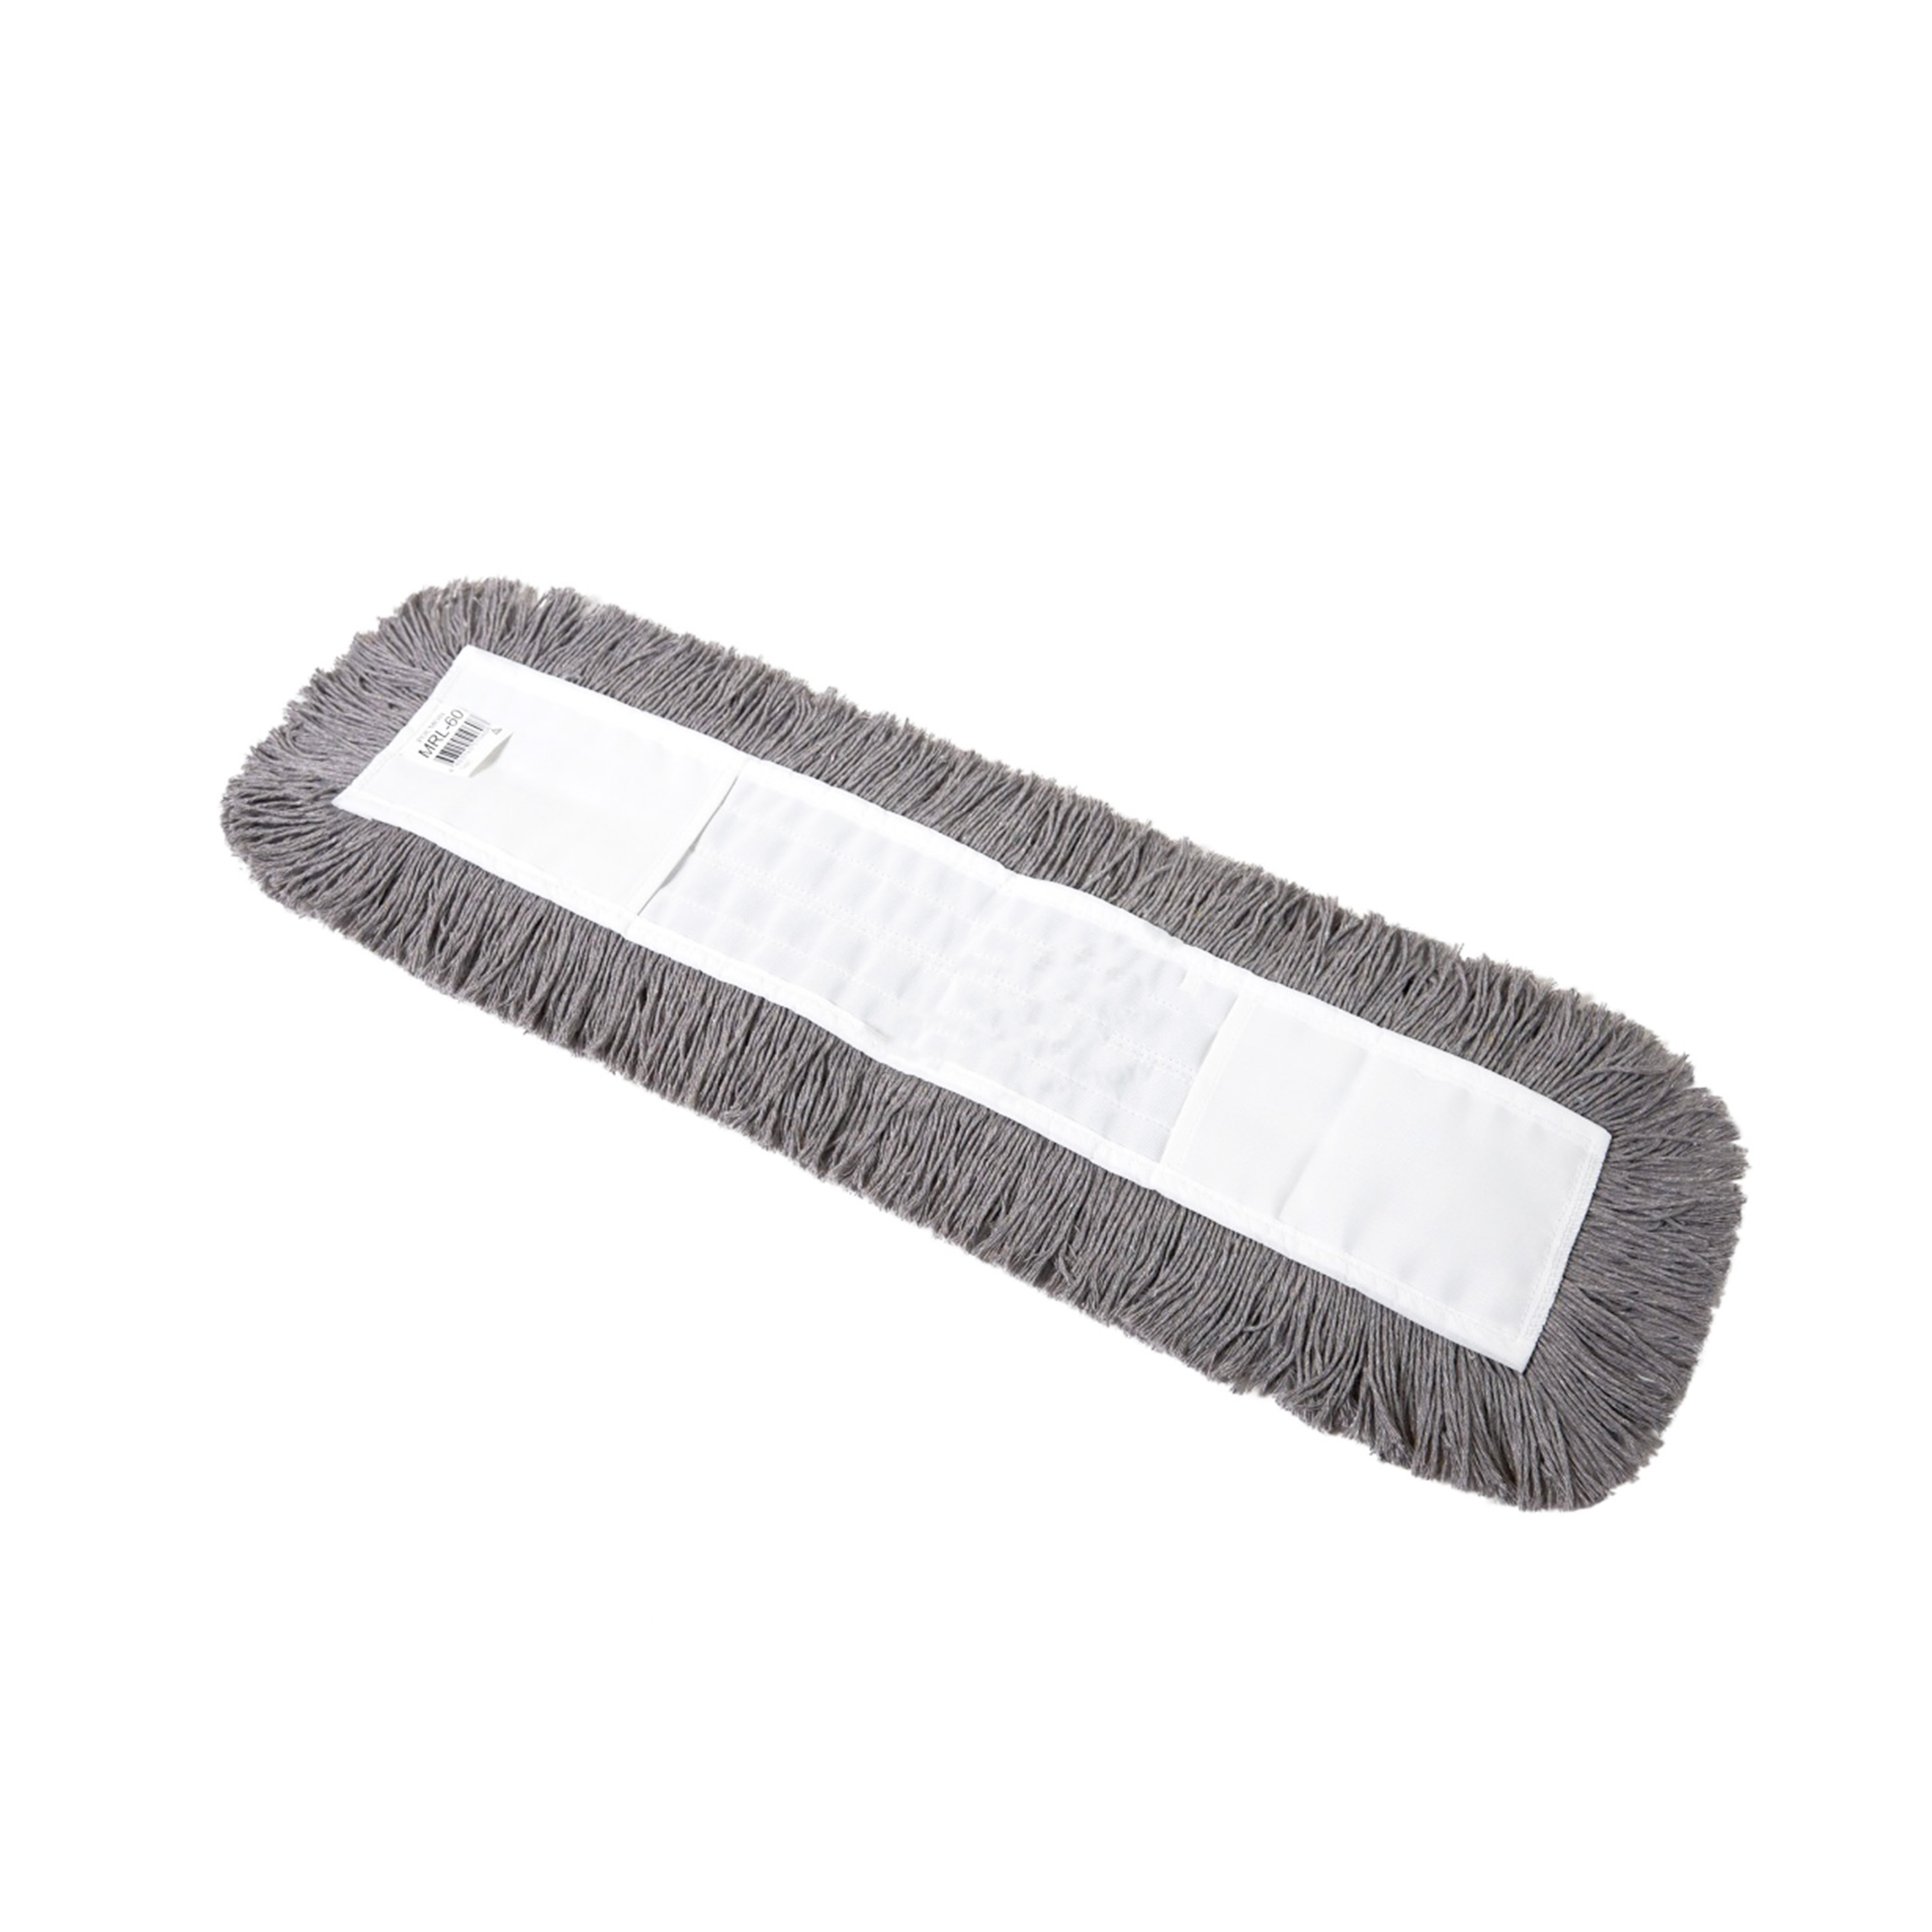 Моп разрезной хлопок-полиэстер серый 60 см Росмоп карман MRL-60